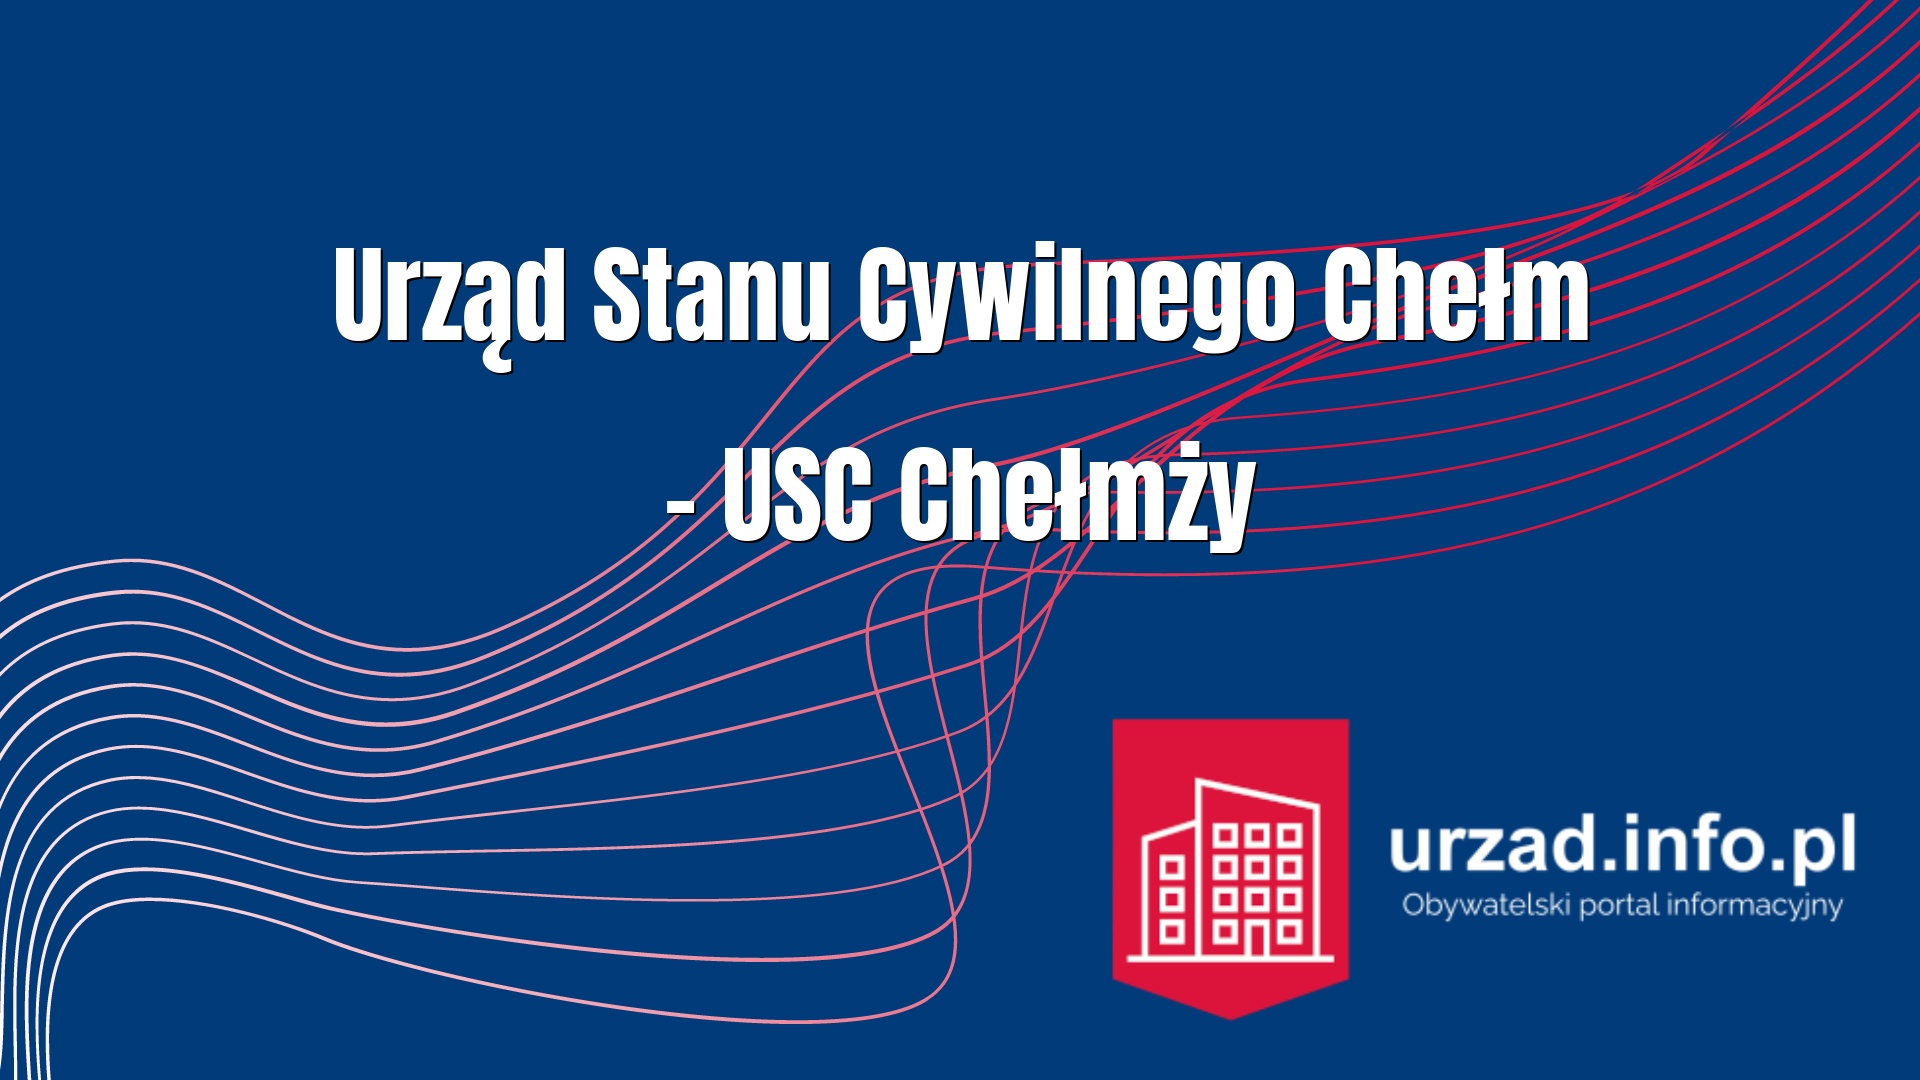 Urząd Stanu Cywilnego Chełm – USC Chełmży